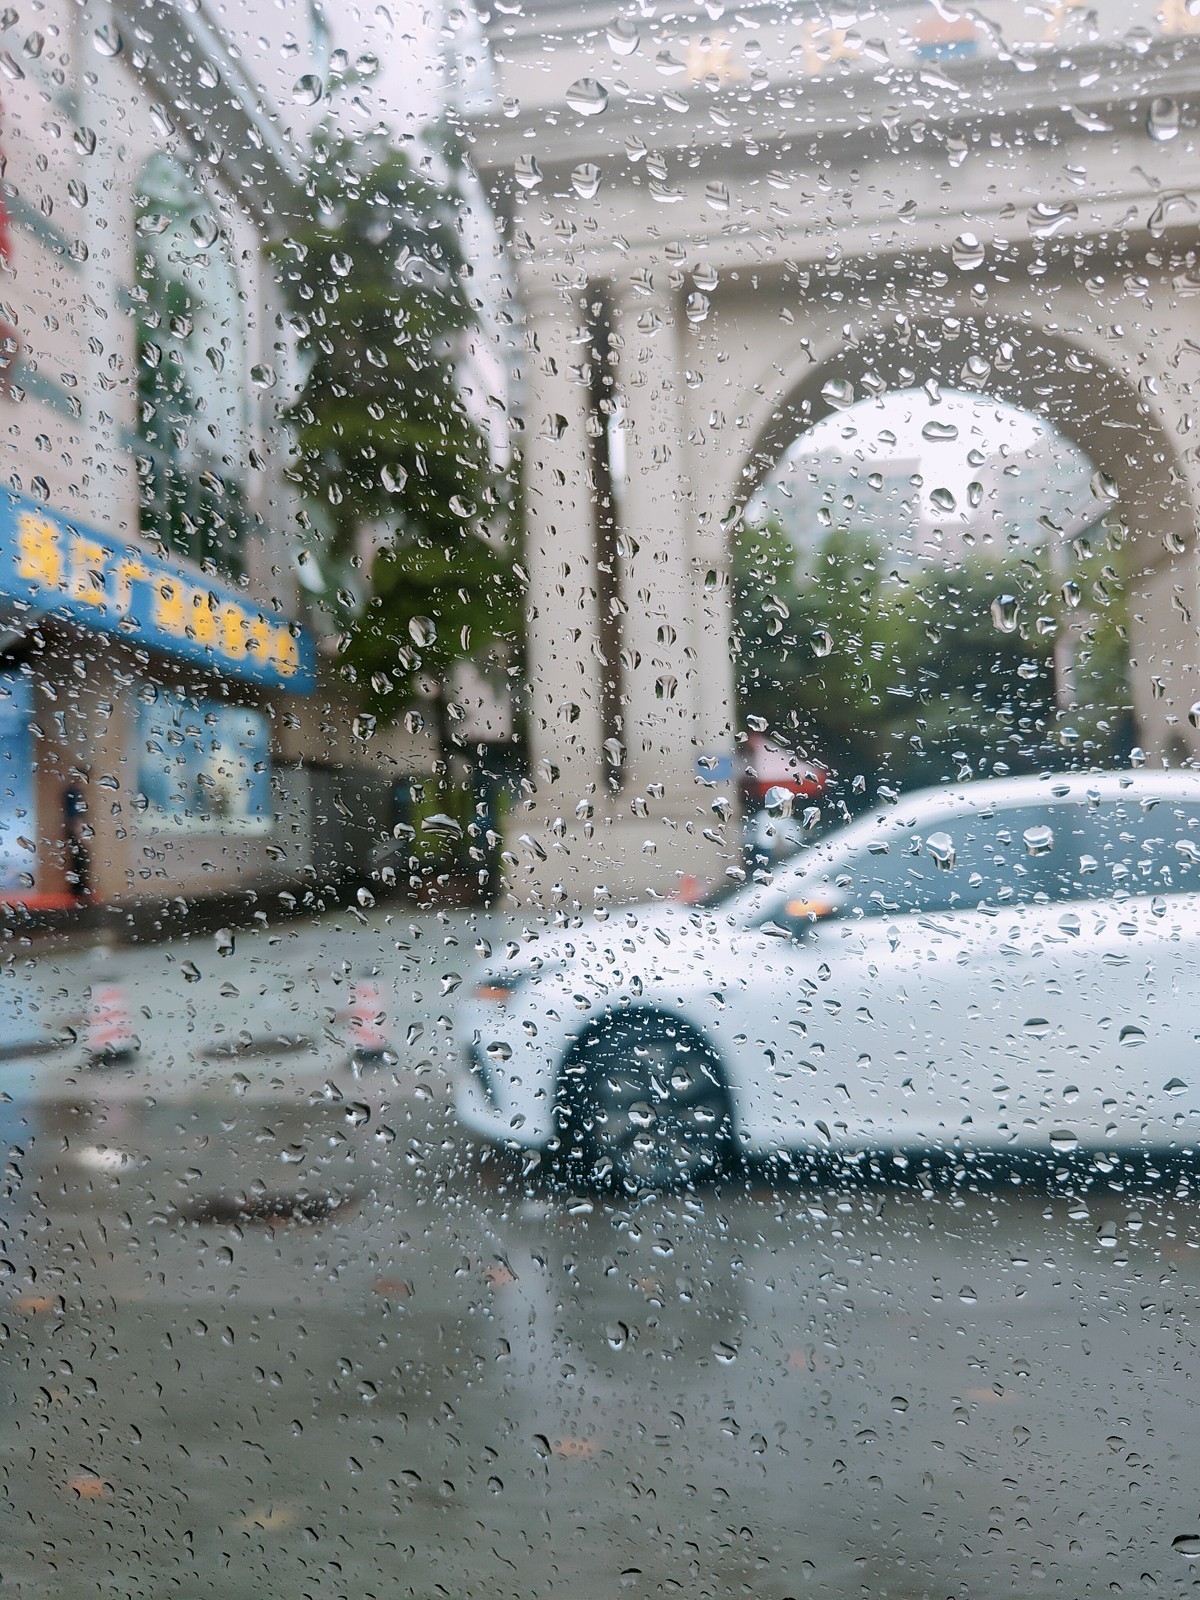 下雨天的車窗圖片素材-JPG圖片尺寸3466 × 2600px-高清圖案500456403-zh.lovepik.com